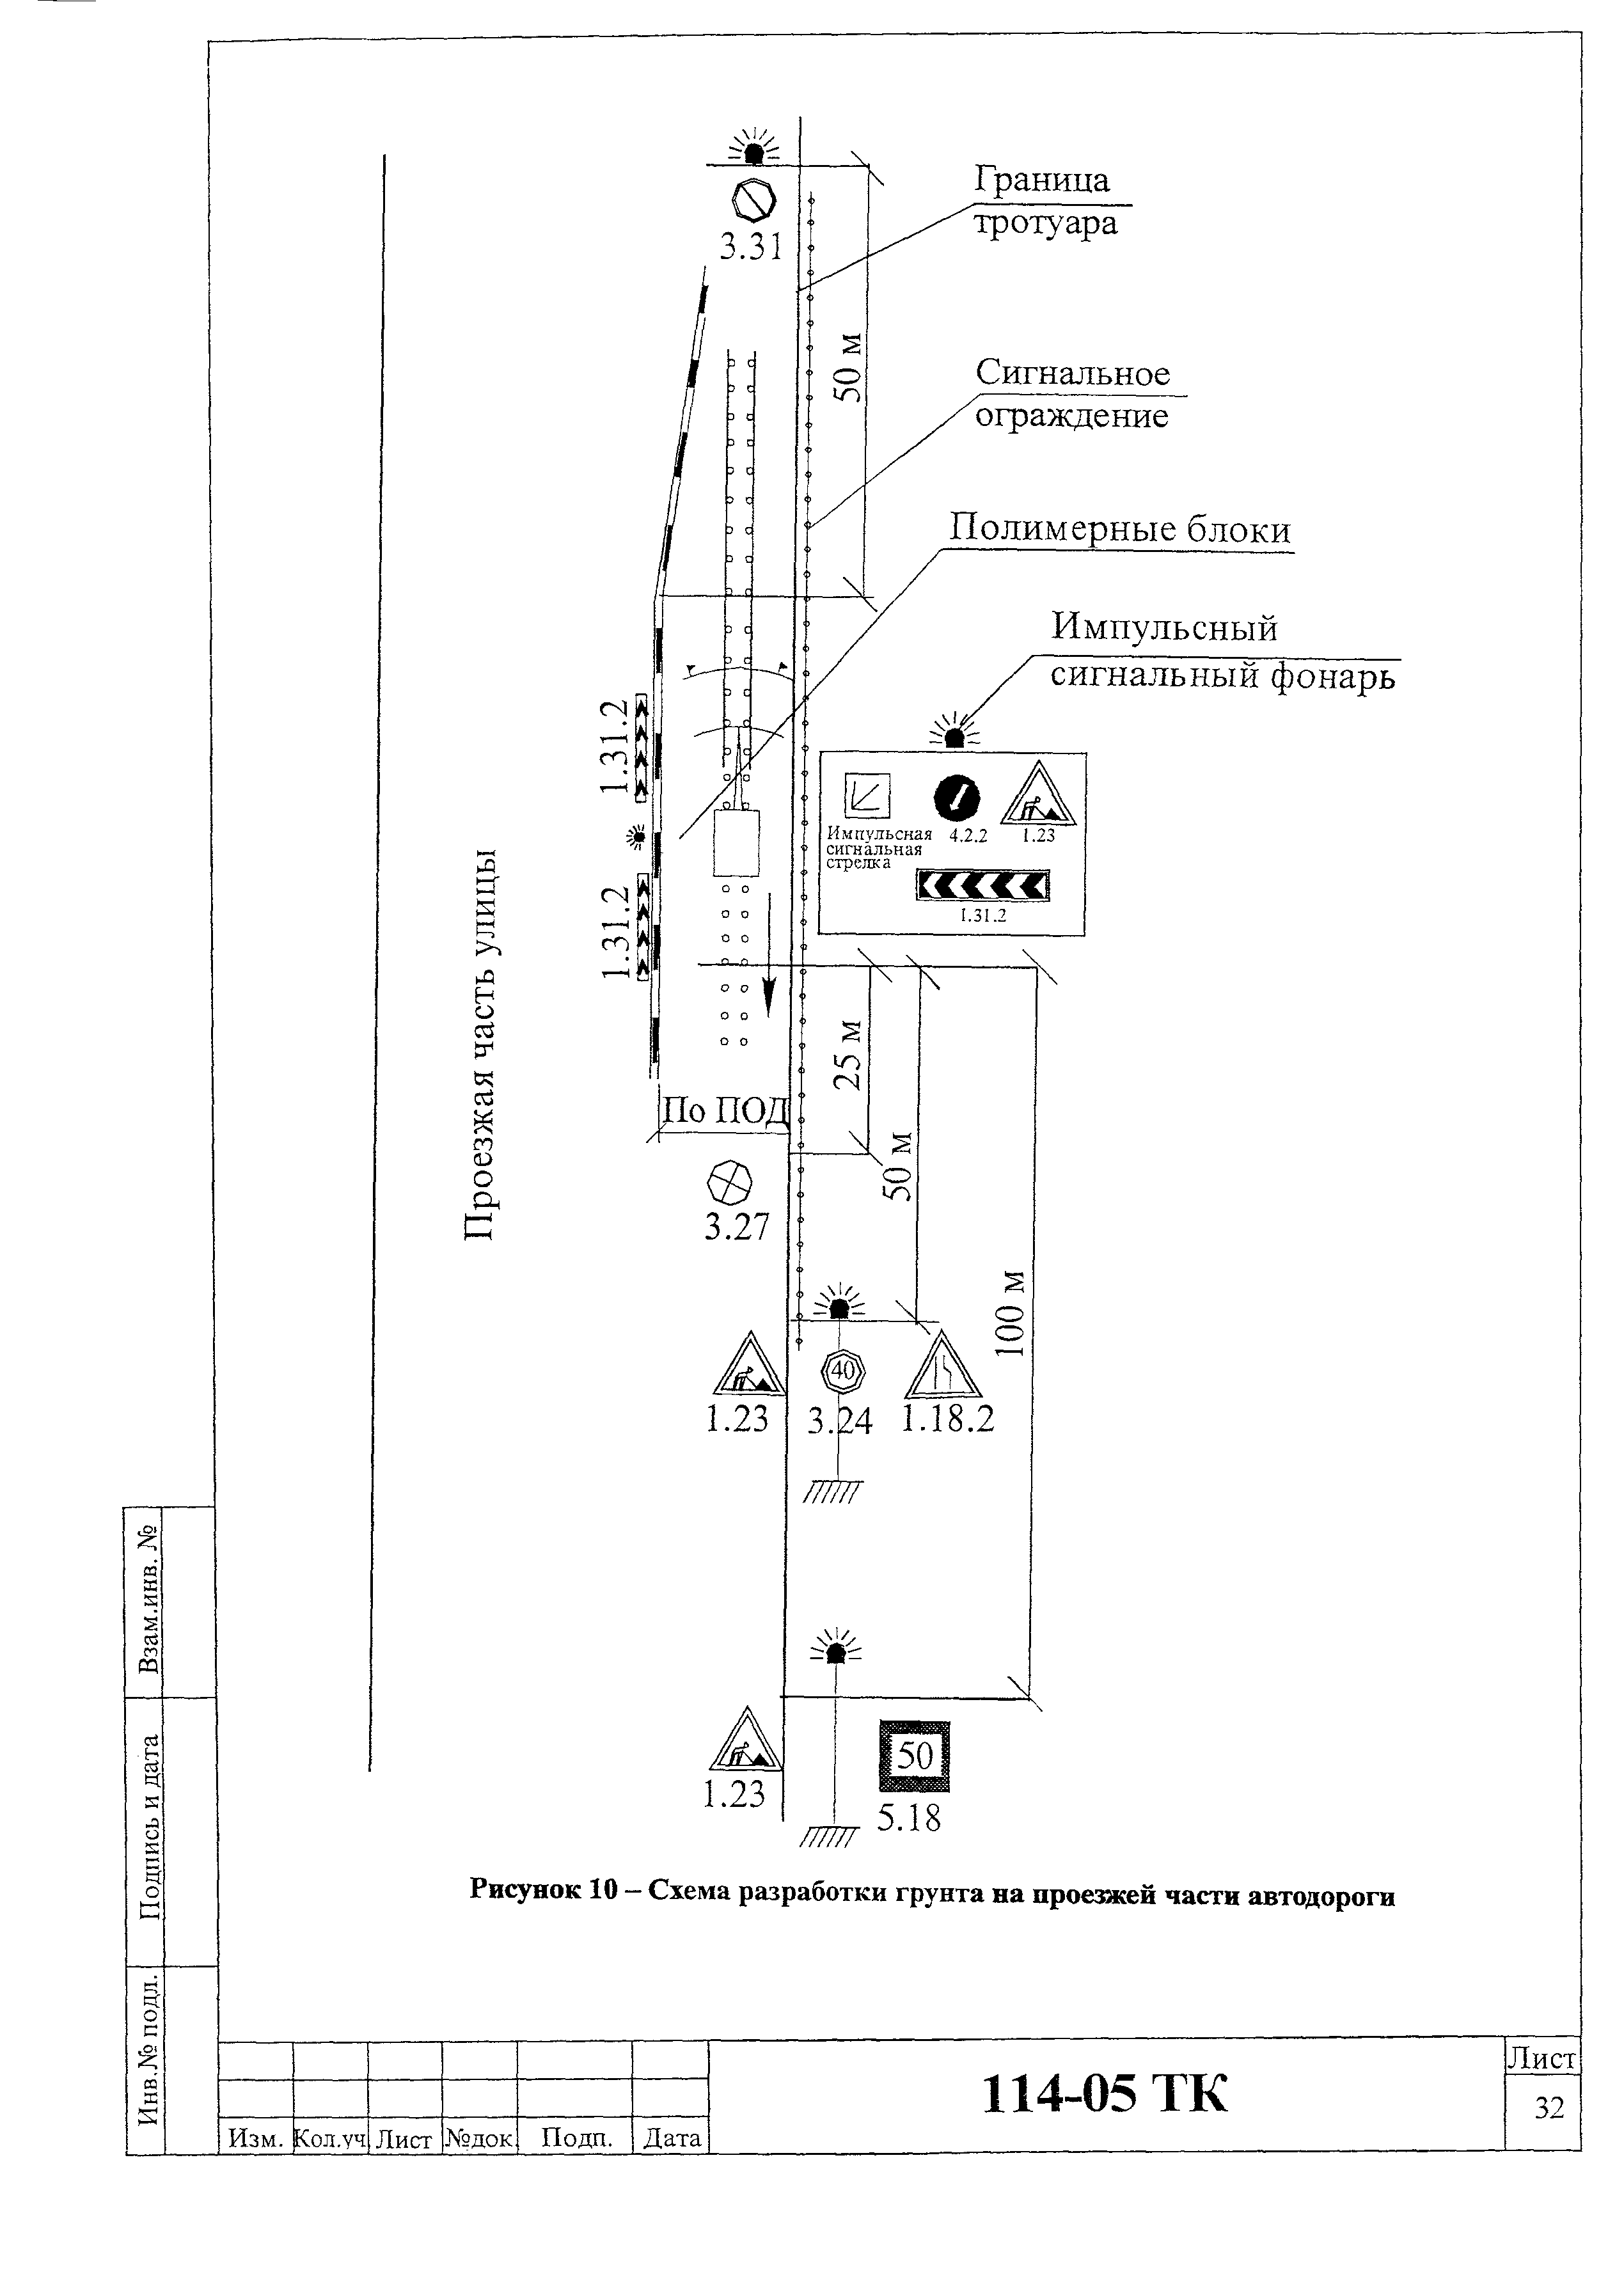 Технологическая карта 114-05 ТК